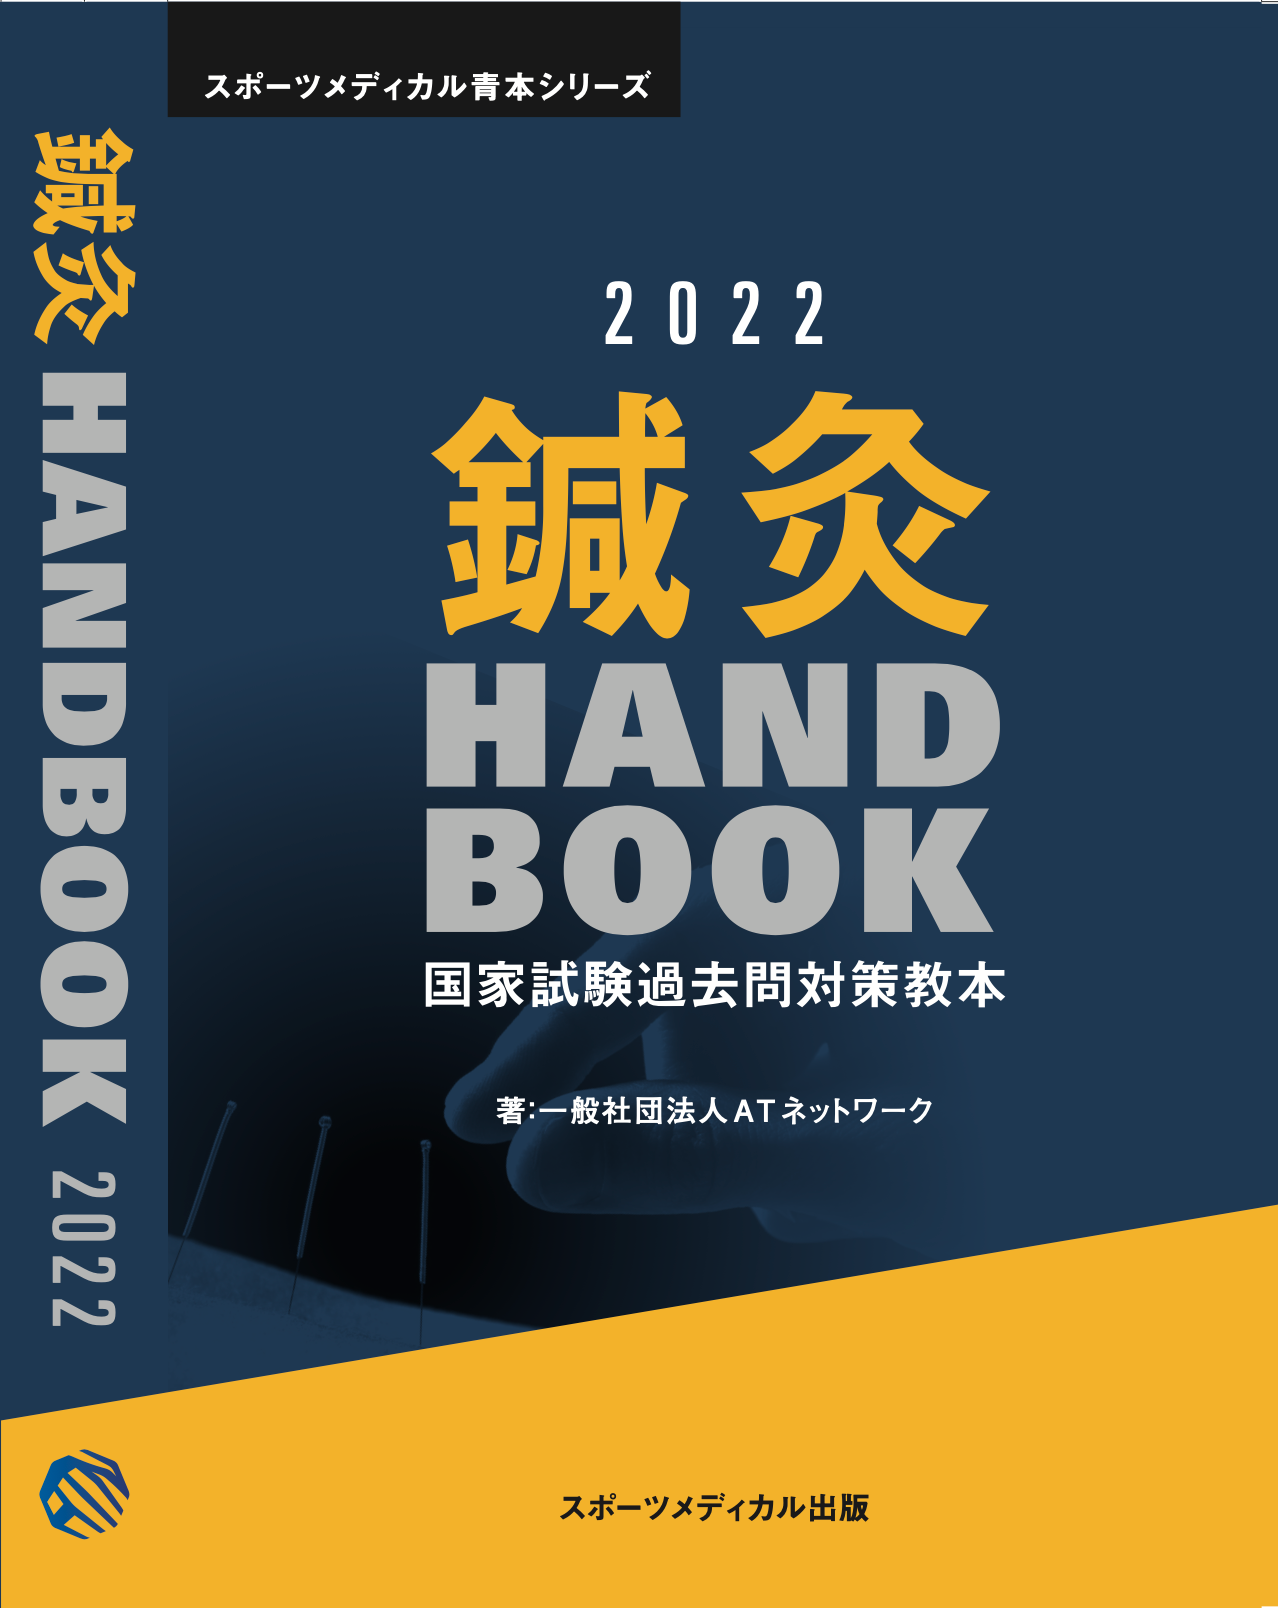 鍼灸 Handbook 2022